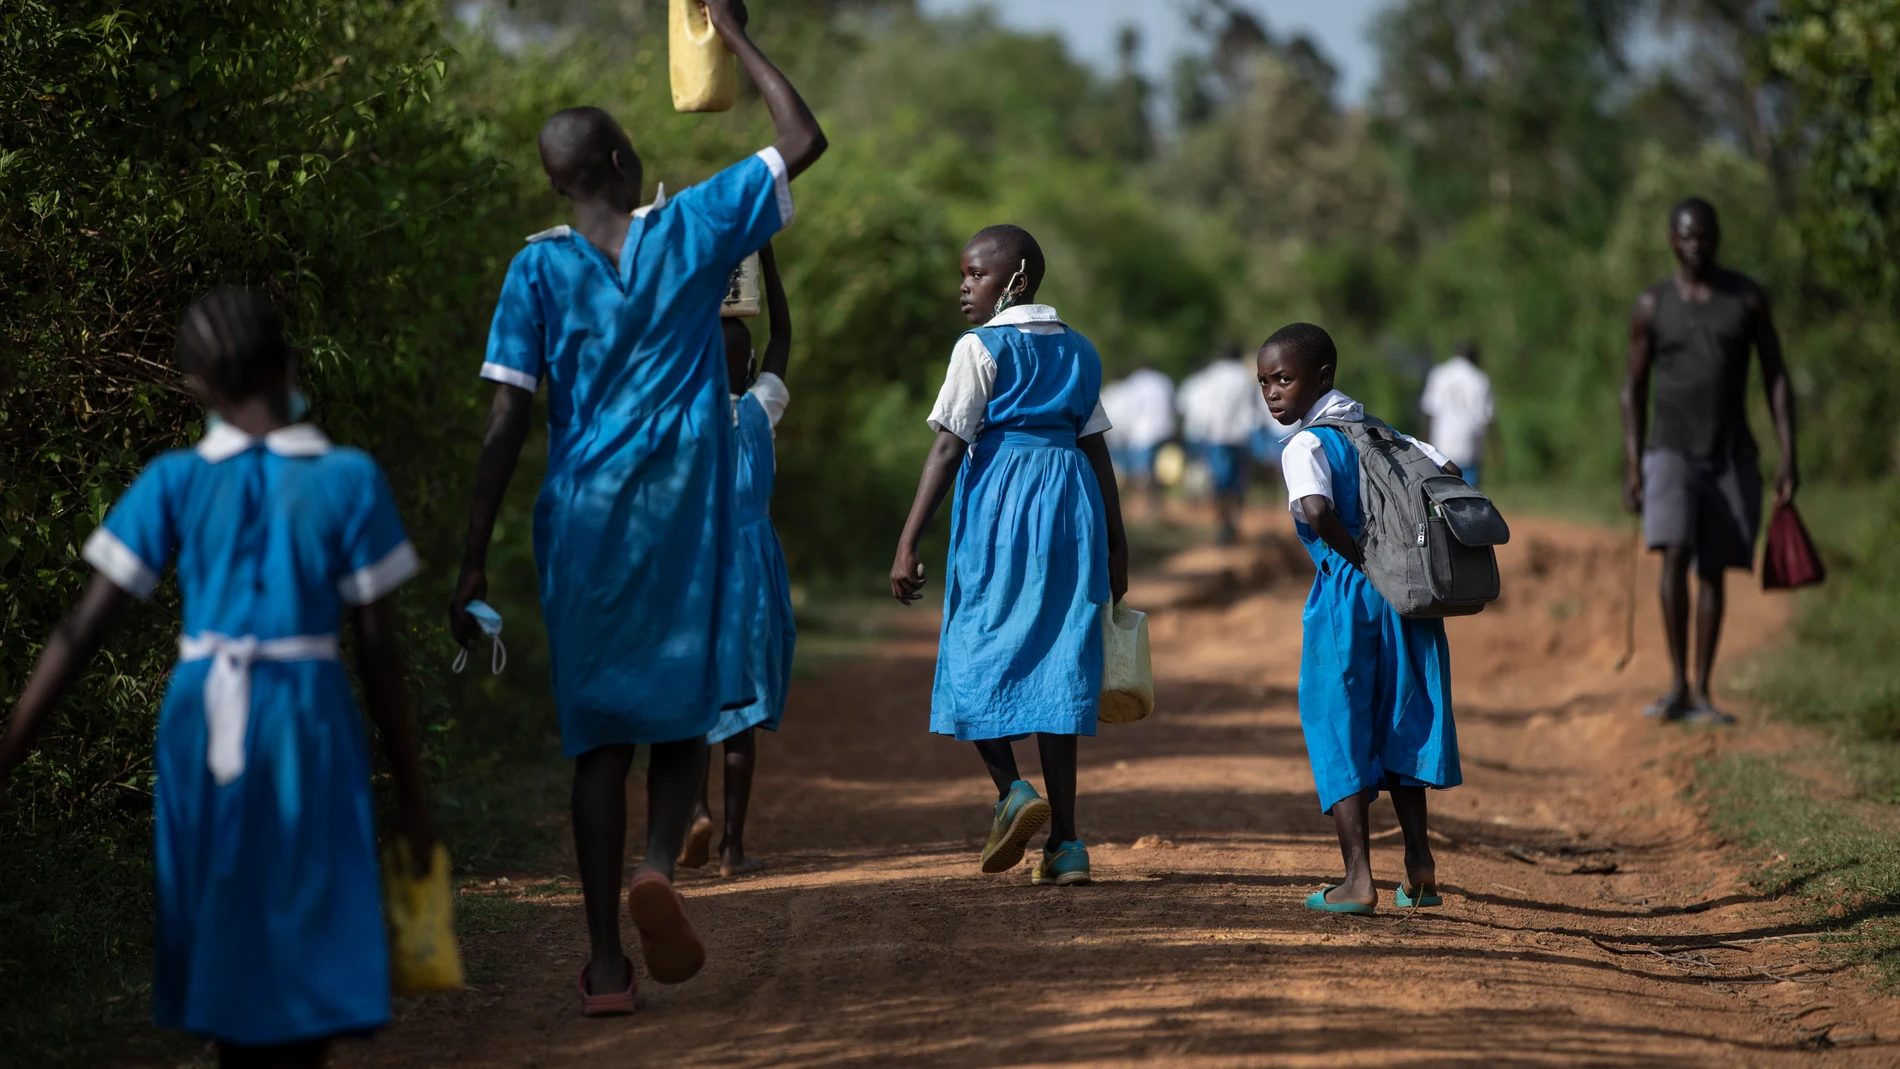 Kambrembo, aldea de la provincia de Kisumu, Kenia, en la que viven 1.200 peronas que nunca han tenido acceso a agua potable. Los niños de la escuela pública van todos los días al río Enzoya a coger agua.